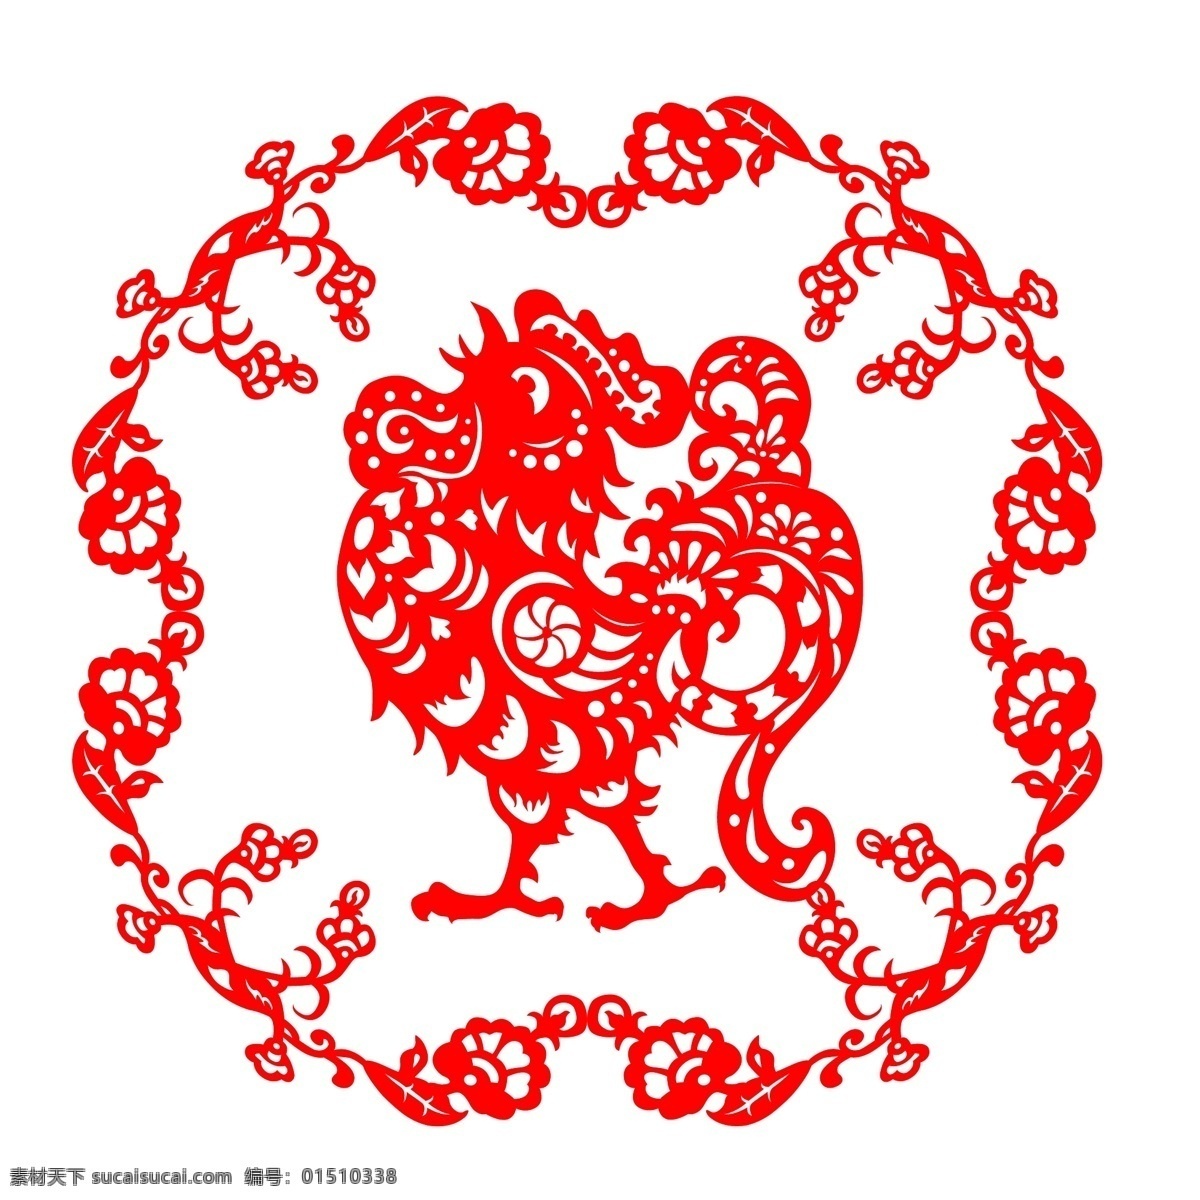 鸡年 中国 风 民族 生肖 剪纸 矢量图 花边 精美红色 12生肖 民族特色 中国元素 文化